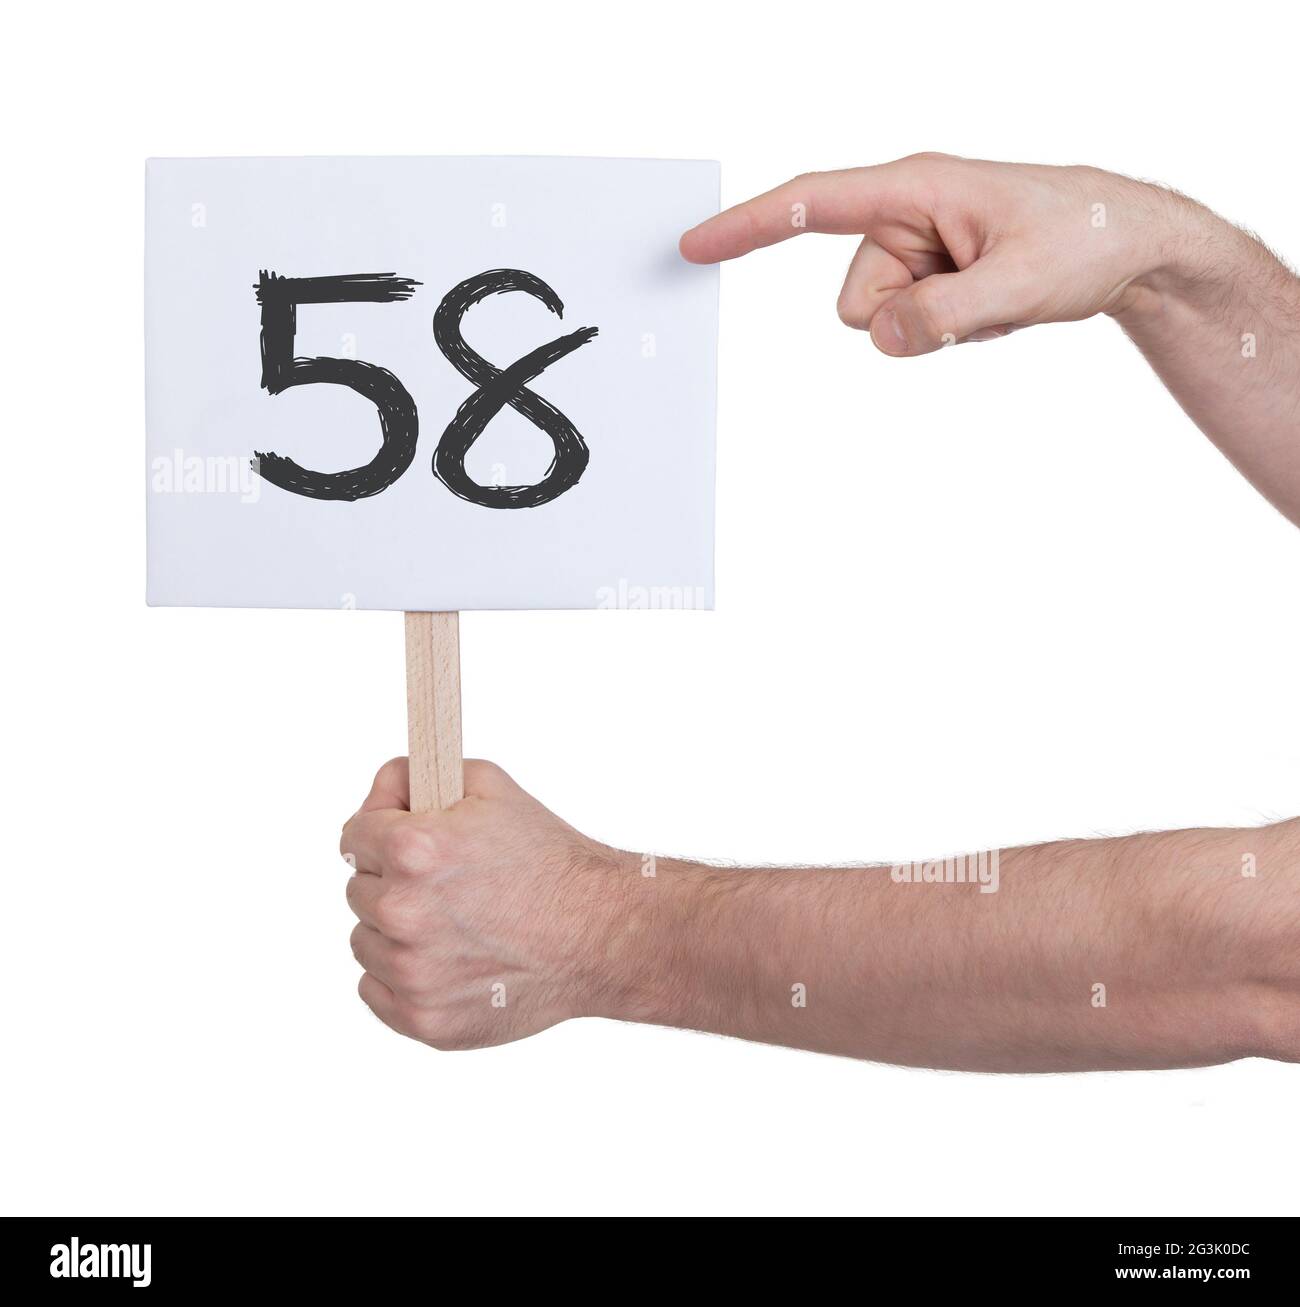 Zeichen mit einer Zahl, 58 Stockfotografie - Alamy